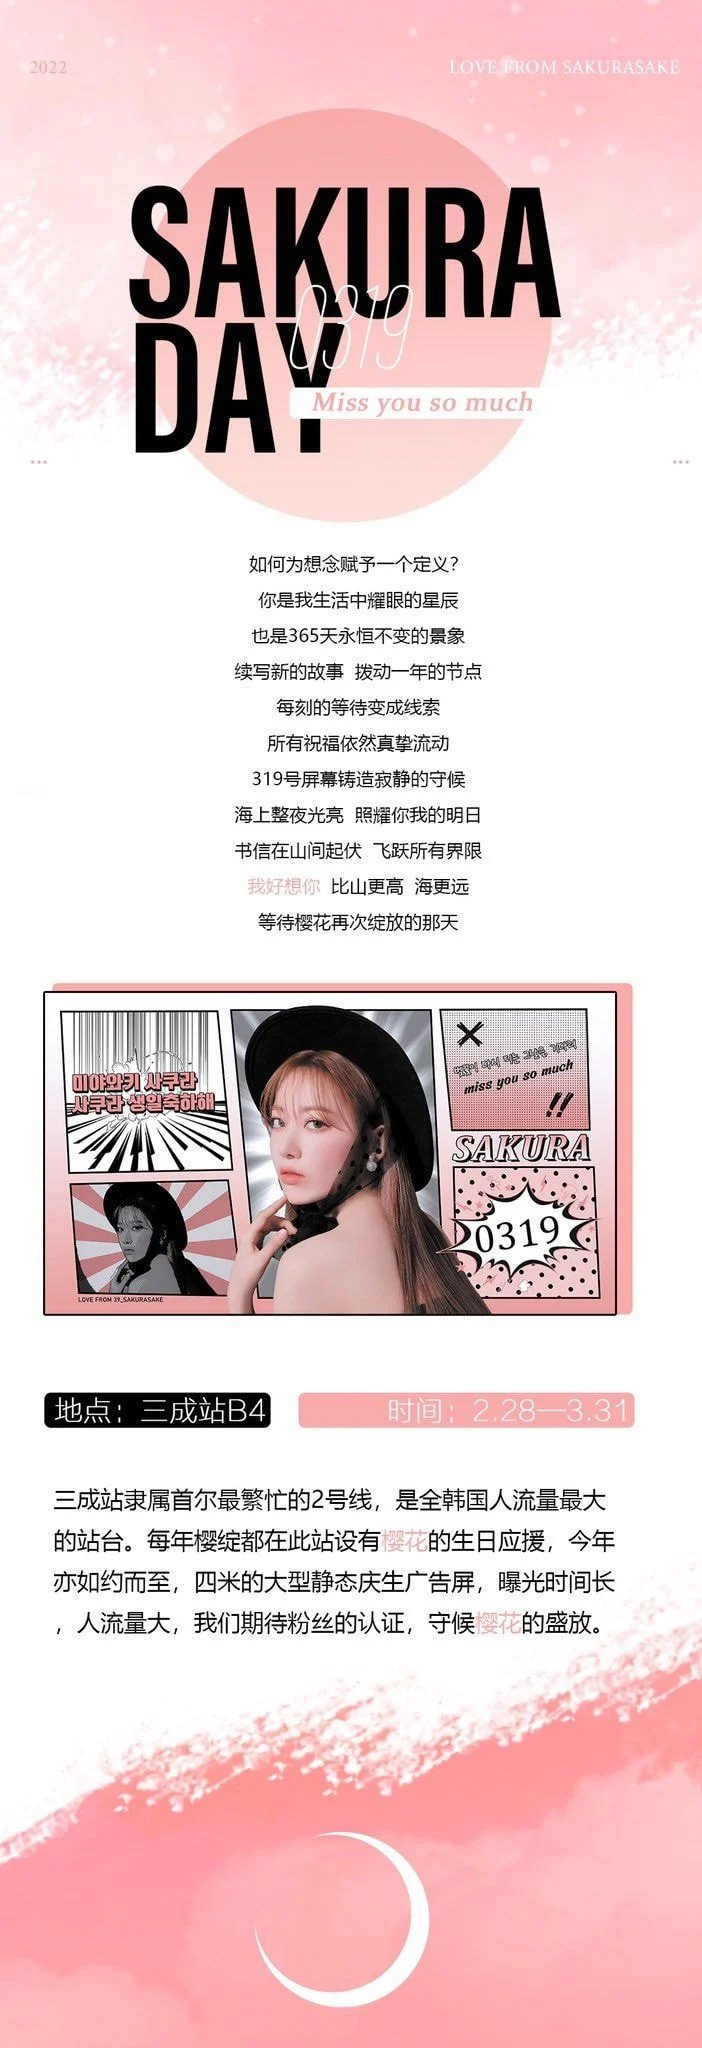 Китайский фанклуб Мияваки Сакуры разозлил корейцев, добавив дизайн «флага Восходящего солнца» на корейскую рекламу в честь дня рождения девушки